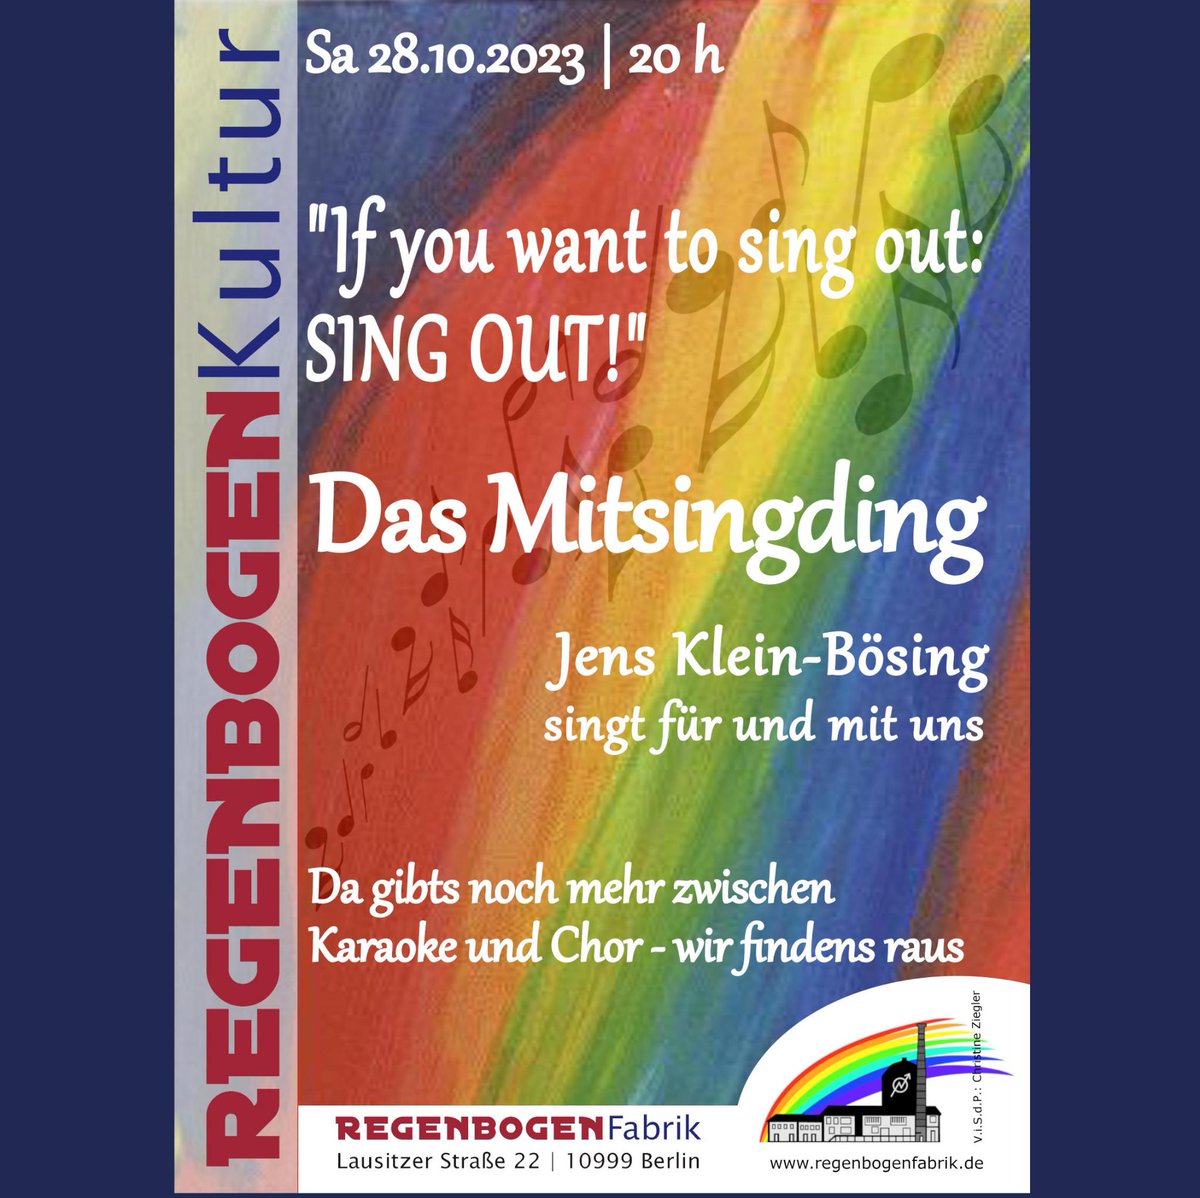 'If you want to sing out: SING OUT!'
Der Mitsingabend mit Jens Klein-Bösing

Sa. 28.10.2023 | 20:00 | RegenbogenKino

Endlich wieder.
Singen verbindet, also tun wir es gemeinsam.
Schön, schräg, flüsternd, laut, wütend, zart…

Eintritt frei, Spenden willkommen.
#rbf #b2810 #xberg